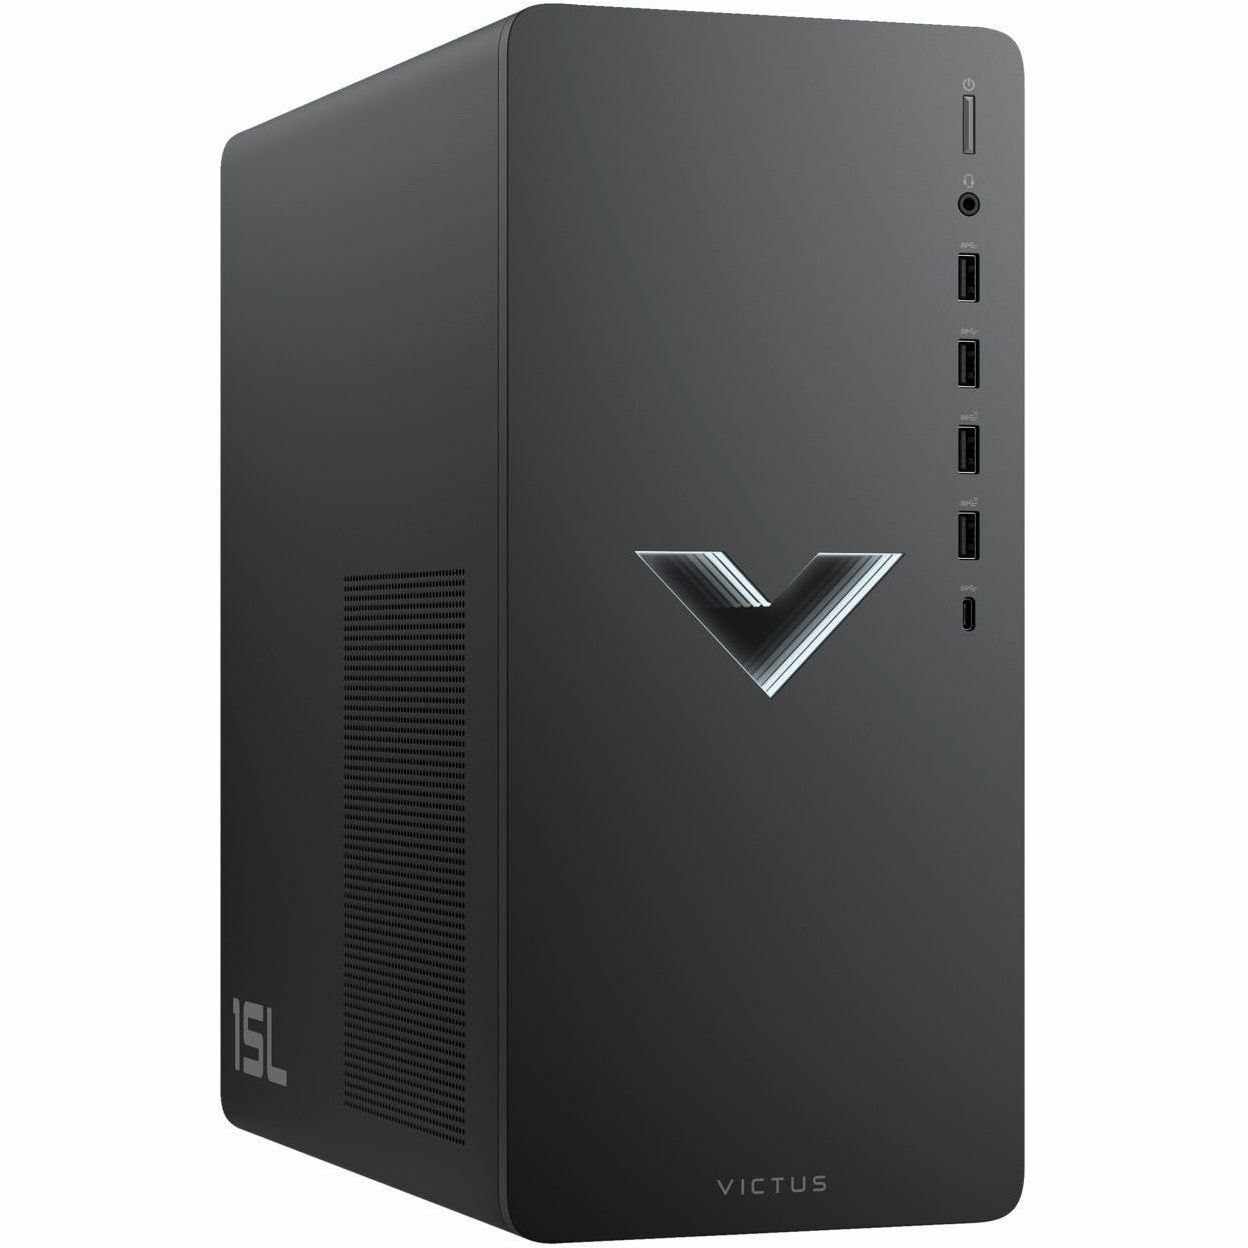 VICTUS TG02-1000 TG02-1060h Gaming Desktop Computer - Intel Core i7 13th Gen i7-13700F - 16 GB - 1 TB SSD - Mica Silver Metal